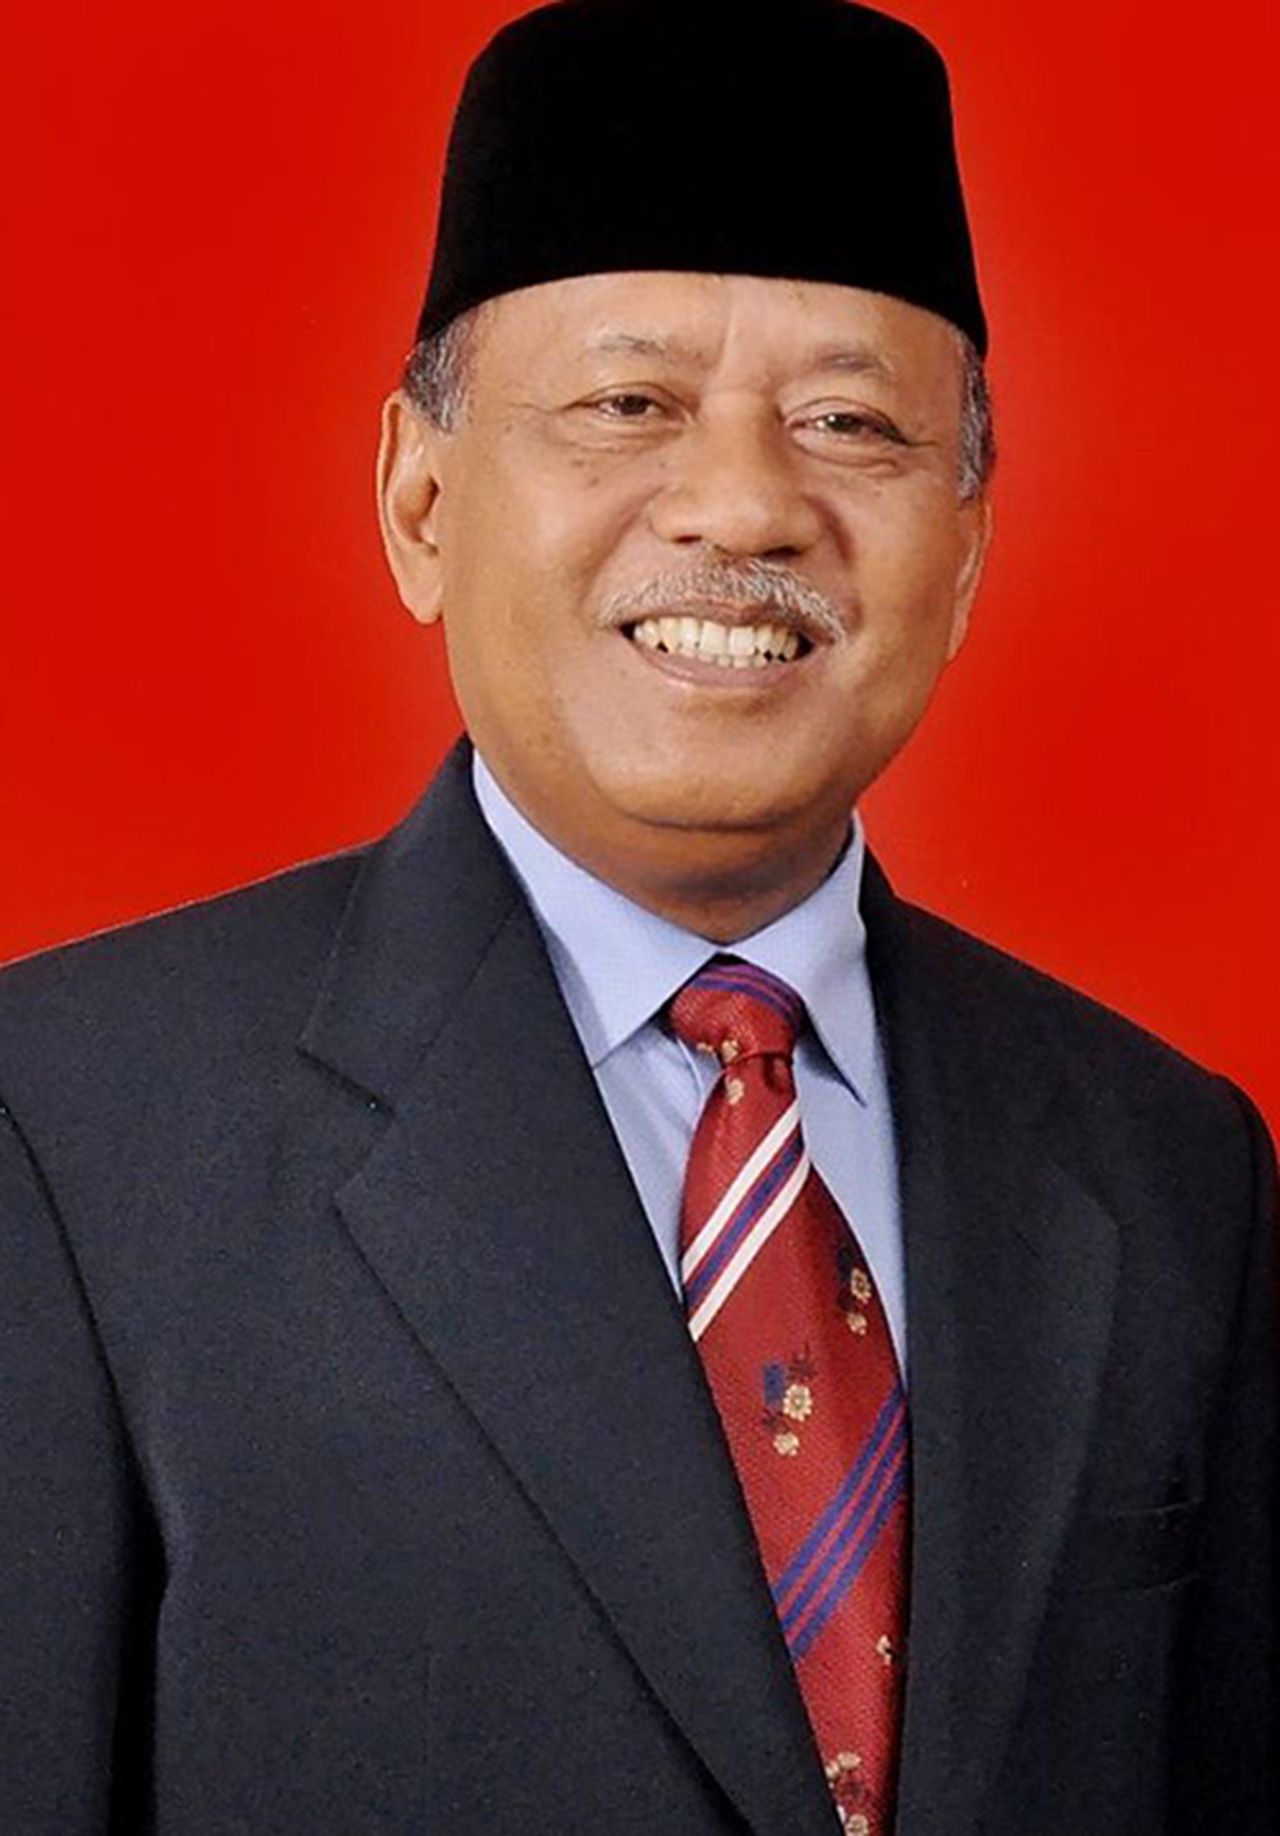 Mantan Bupati Majalengka, Sutrisno yang kini menjadi Anggota DPR RI dari PDI Perjuangan